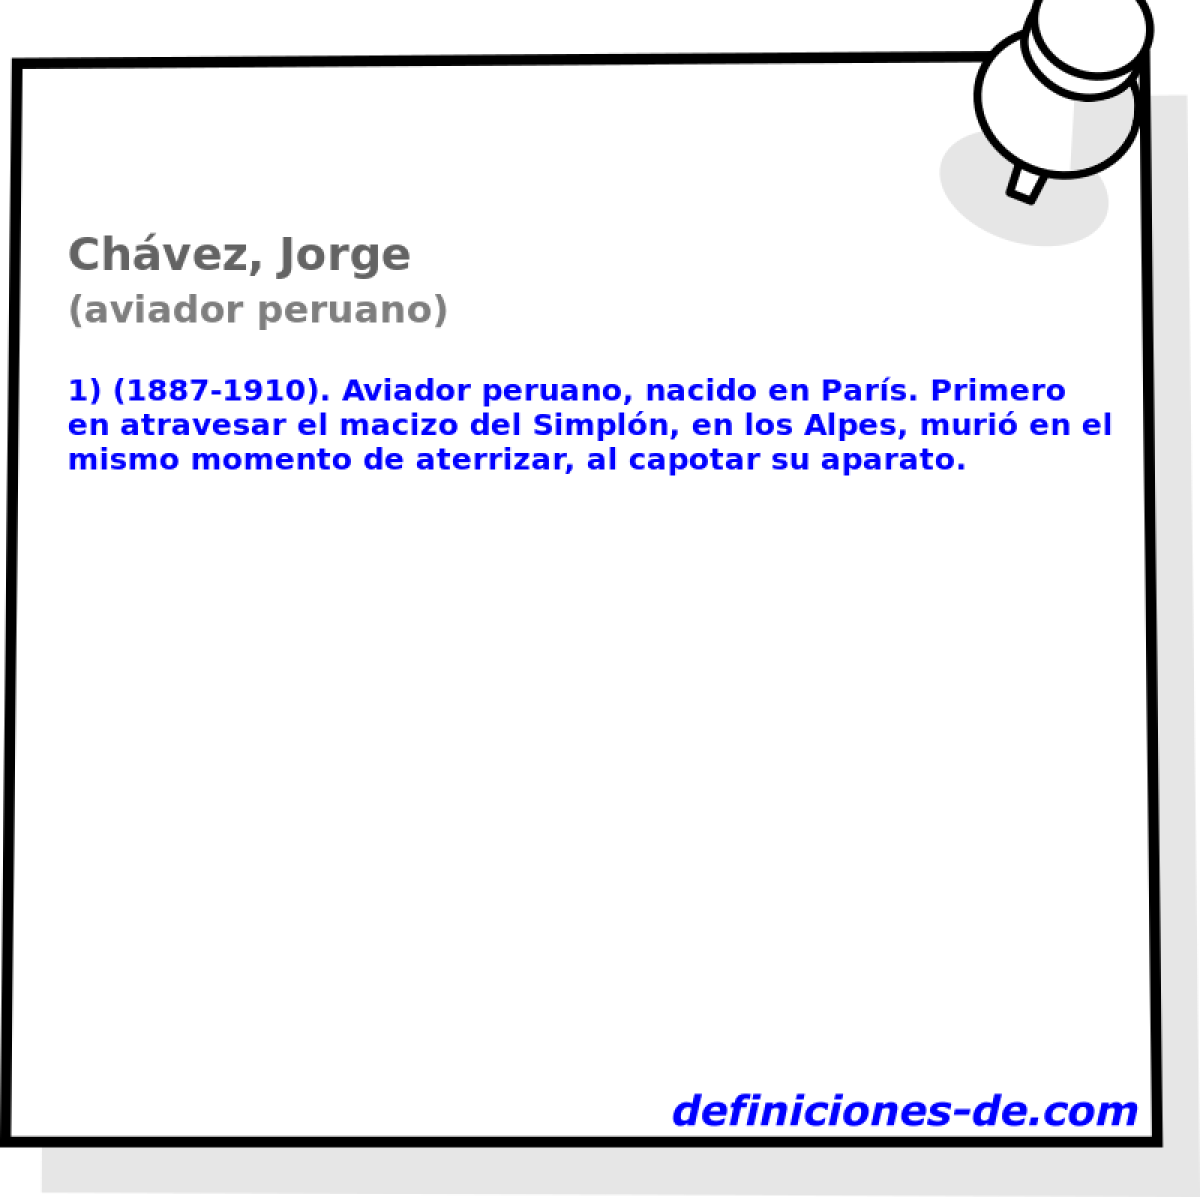 Chvez, Jorge (aviador peruano)